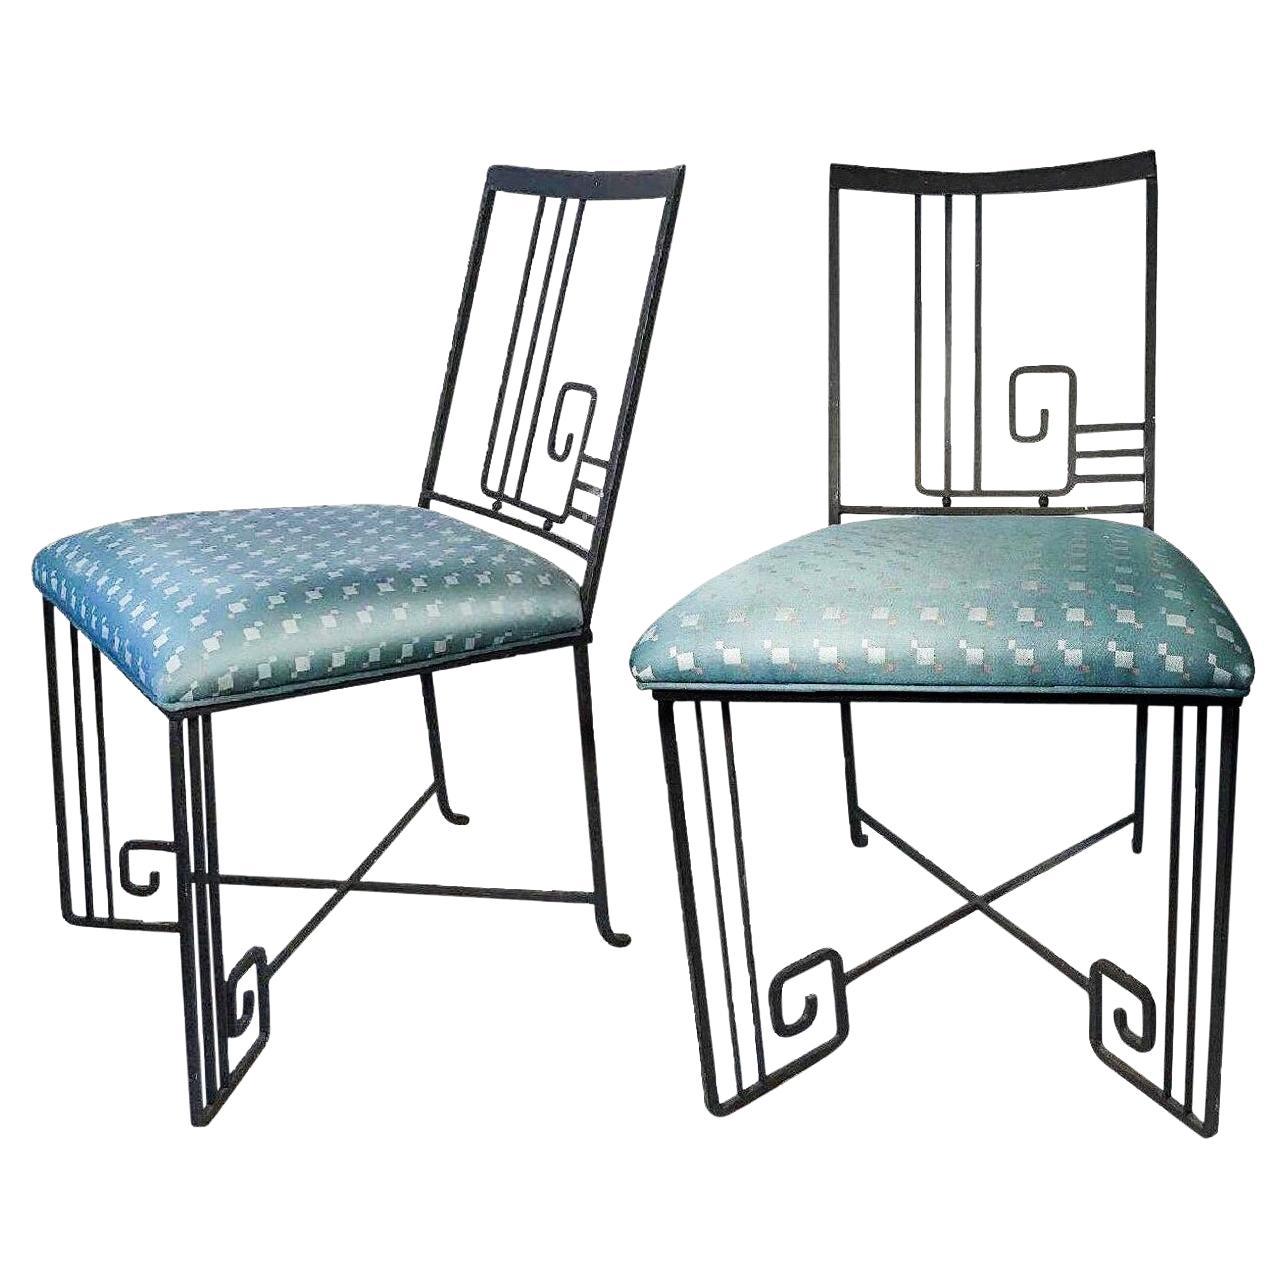 ‘Biltmore’ Wrought Iron Chair Marina McDonald Jazz Furniture Art Deco